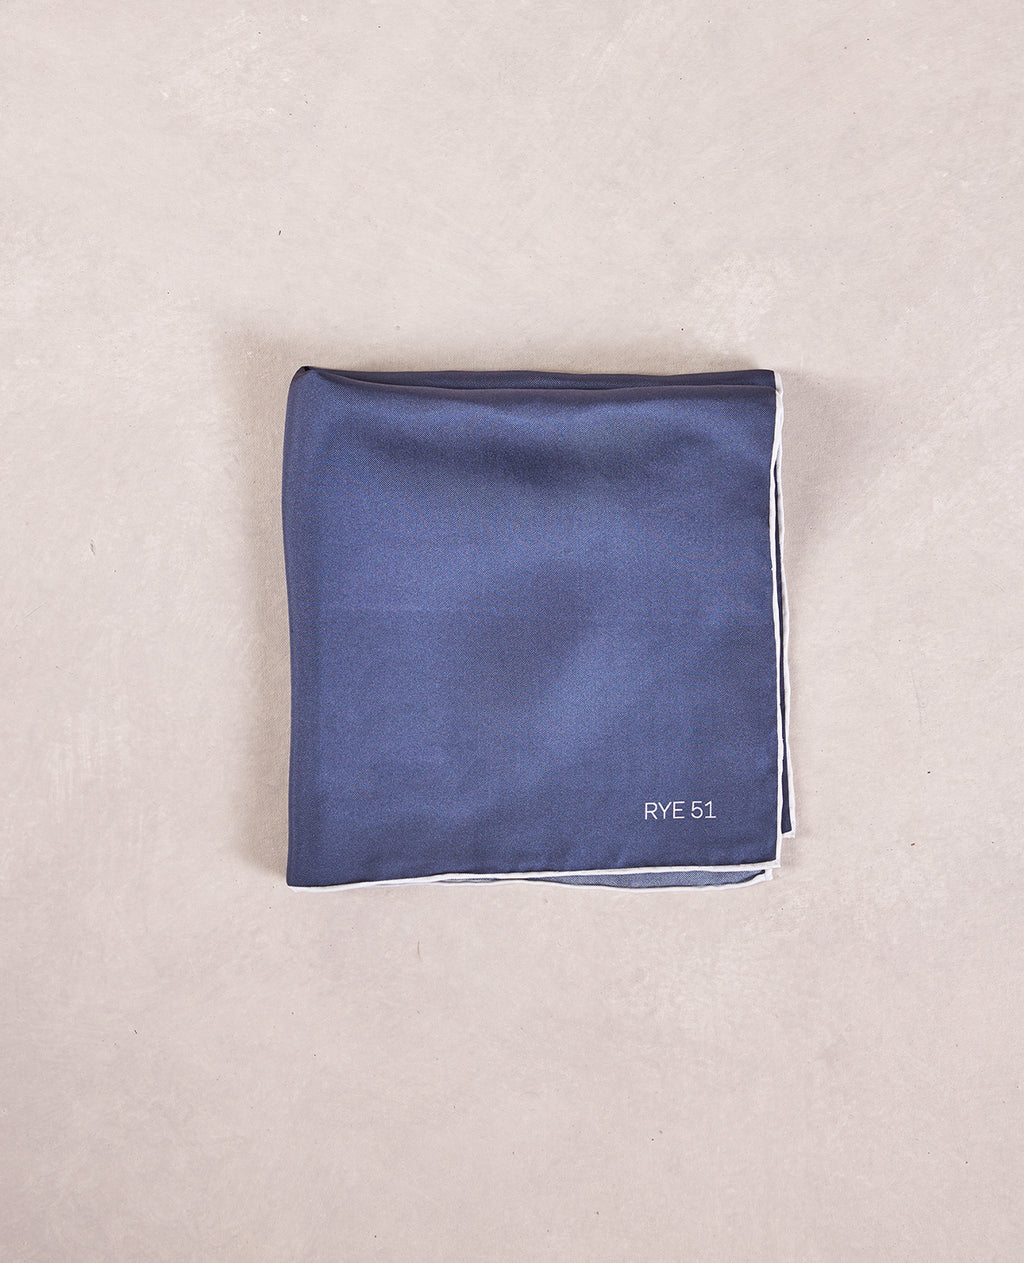 The Silk Pocket Square - 100% Silk Pocket Square - Solid Navy w/ Contrast White Trim